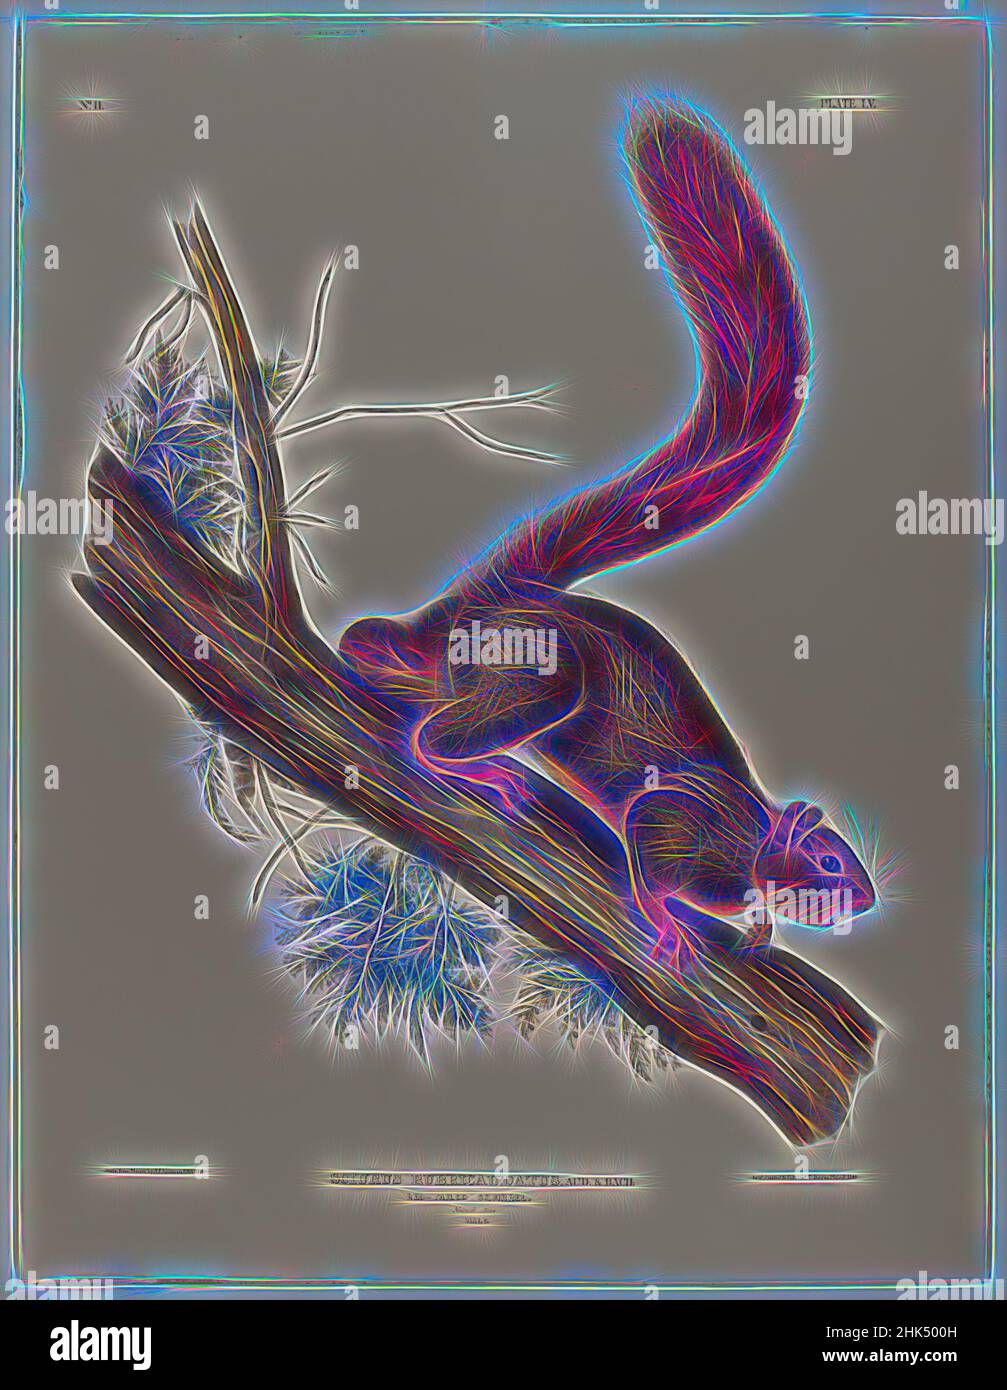 Ispirato da Brown o Norvegia Rat, scoiattolo dalla coda rossa, John James Audubon, americano, nato Haiti, 1785-1851, litografia, 27 x 21 pollici, 68,6 x 53,3 cm, fauna, flora, arto, mammiferi, Studio della natura, roditore, albero, reinventato da Artotop. L'arte classica reinventata con un tocco moderno. Design di calda e allegra luminosità e di raggi di luce. La fotografia si ispira al surrealismo e al futurismo, abbracciando l'energia dinamica della tecnologia moderna, del movimento, della velocità e rivoluzionando la cultura Foto Stock